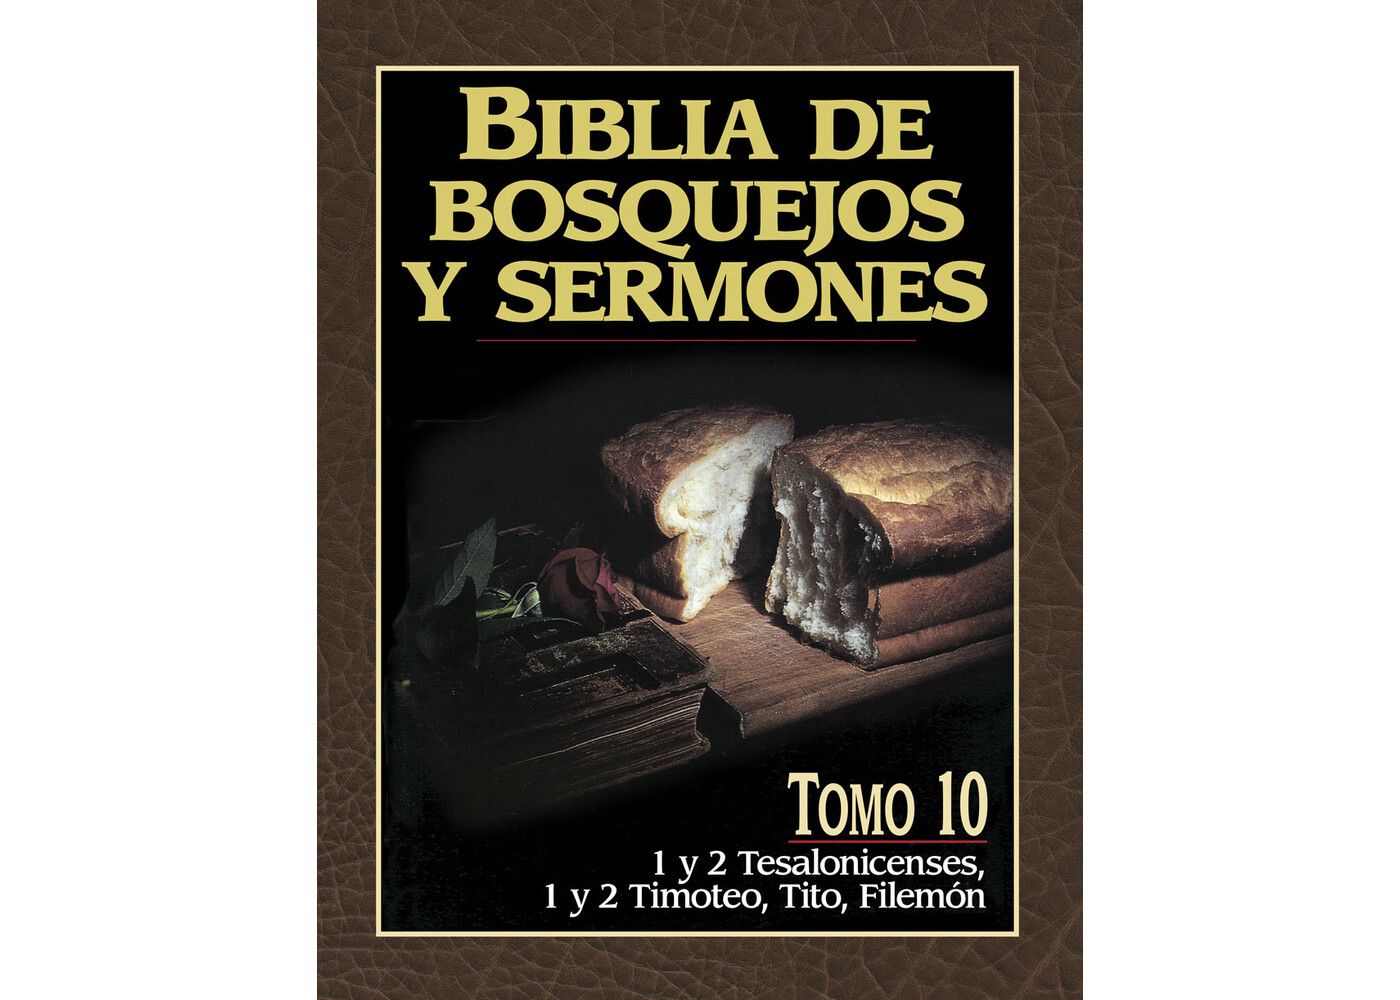 PORTAVOZ BIBLIA DE BOSQUEJOS Y SERMONES: 1 Y 2 TESALONICENSES, 1 Y 2 TIMOTEO, TITO, FILEMON